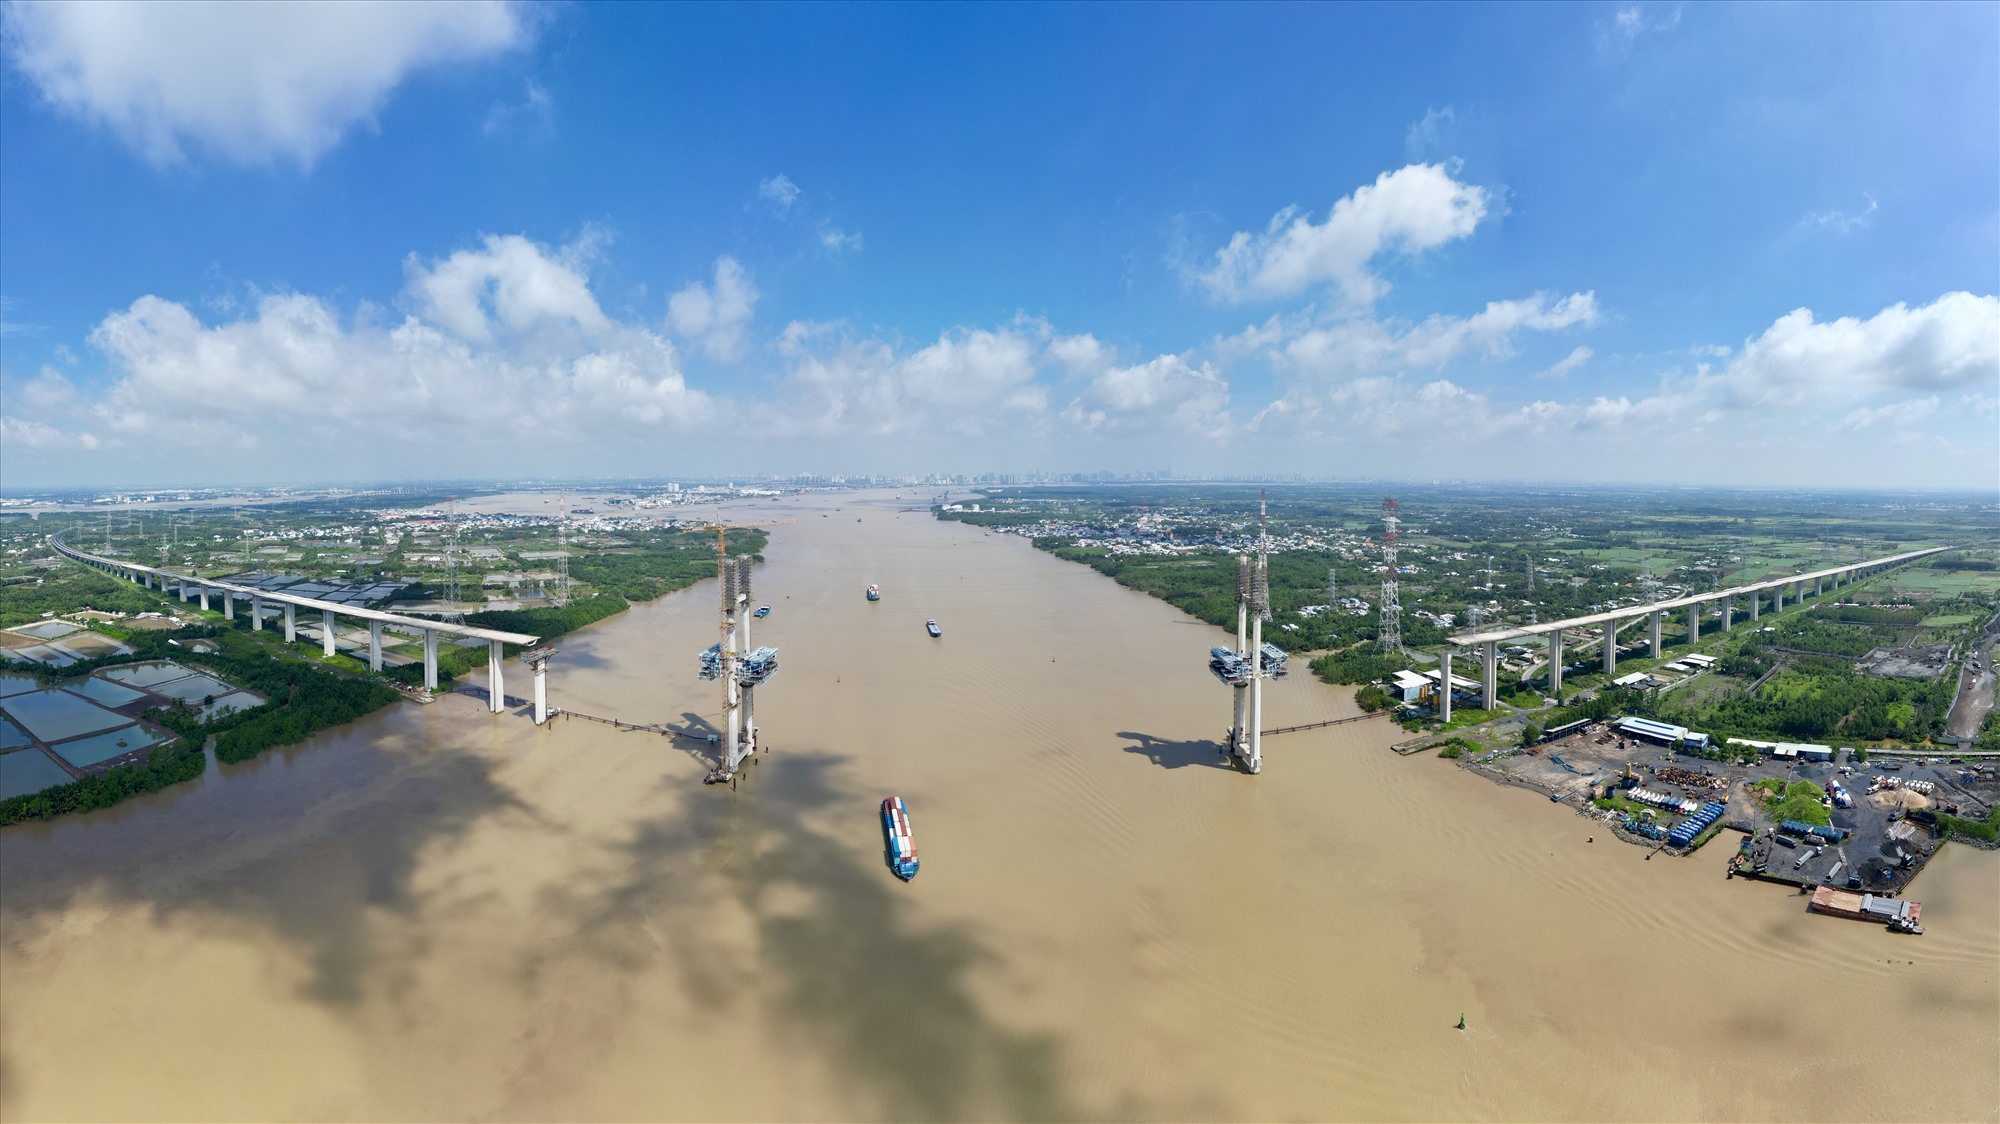 Có kích thước và kết cấu tương tự cầu Bình Khánh, cầu Phước Khánh dài 3,18 km vượt sông Lòng Tàu nối huyện Cần Giờ (TPHCM) với huyện Nhơn Trạch (tỉnh Đồng Nai) cũng chưa liền nhịp. Cầu Phước Khánh khởi công 8.2015, dài 3,1 km, nhịp chính dài 300 m, rộng 21,7 m.